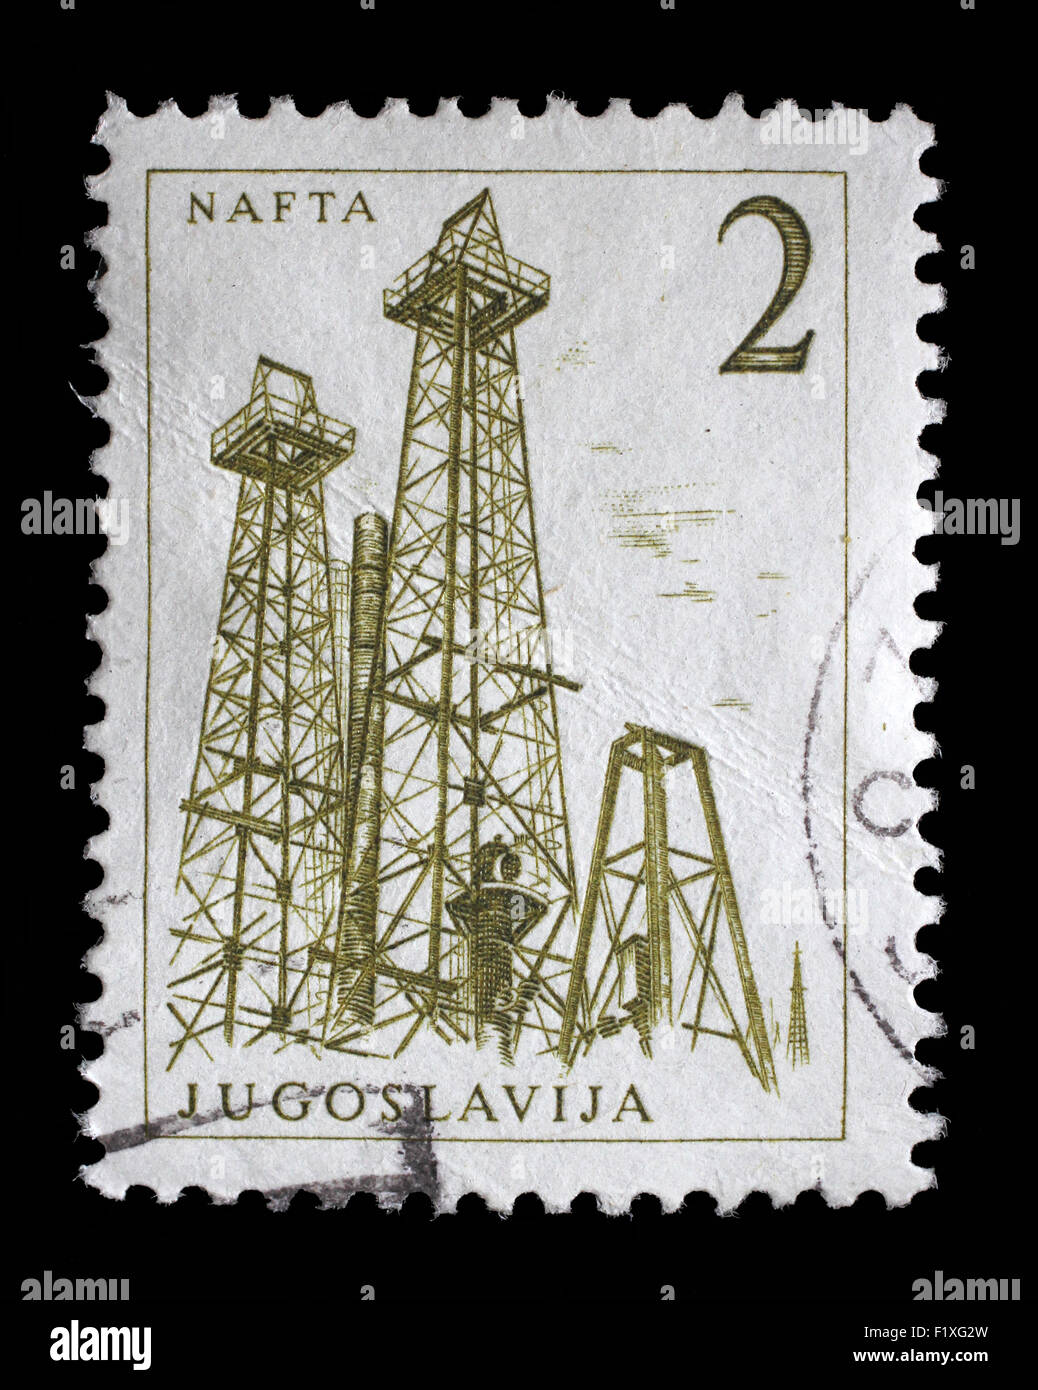 Briefmarke gedruckt in Jugoslawien zeigt eine Öl-Bohrtürme, Nafta, mit der gleichen Inschrift aus Serie "Industriellen Fortschritts" ca. 1958 Stockfoto